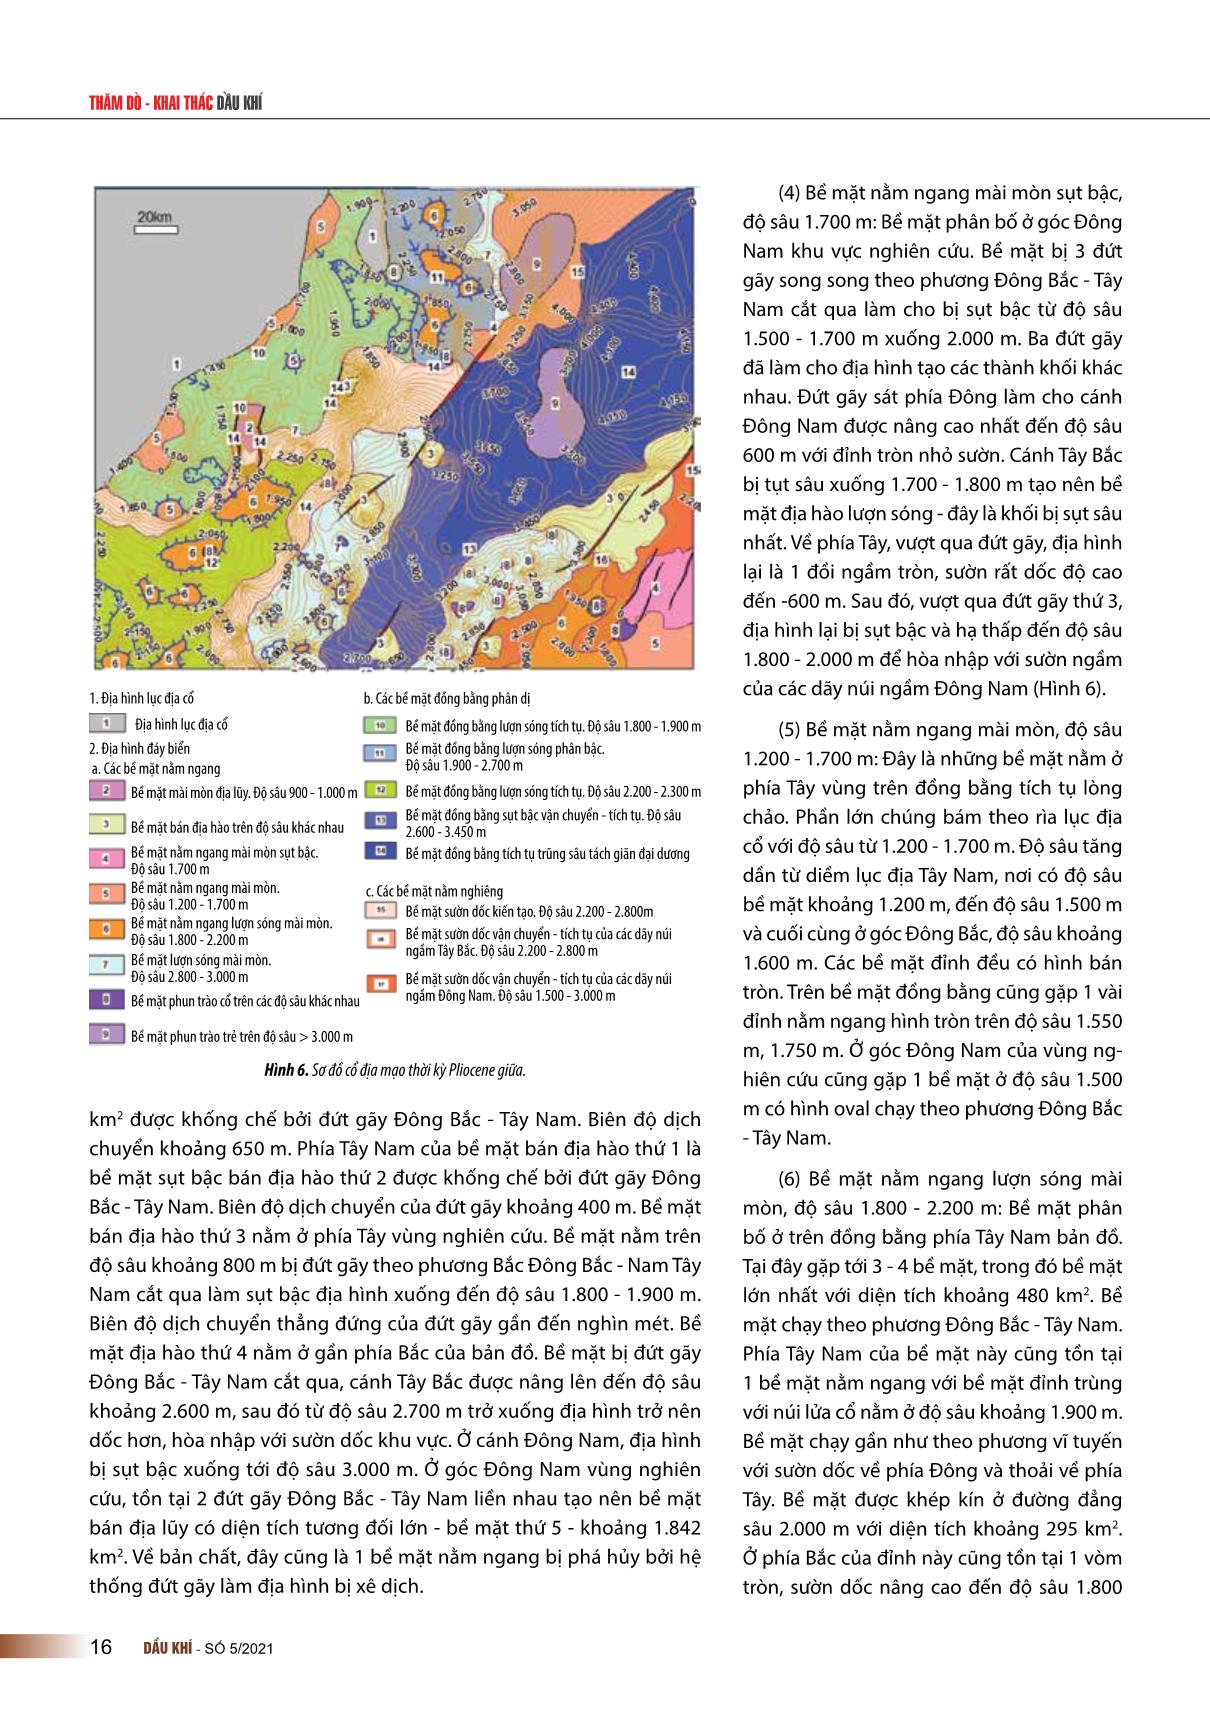 Đặc điểm địa mạo thời kỳ Pliocene khu vực Tây Nam trũng sâu biển Đông trang 6